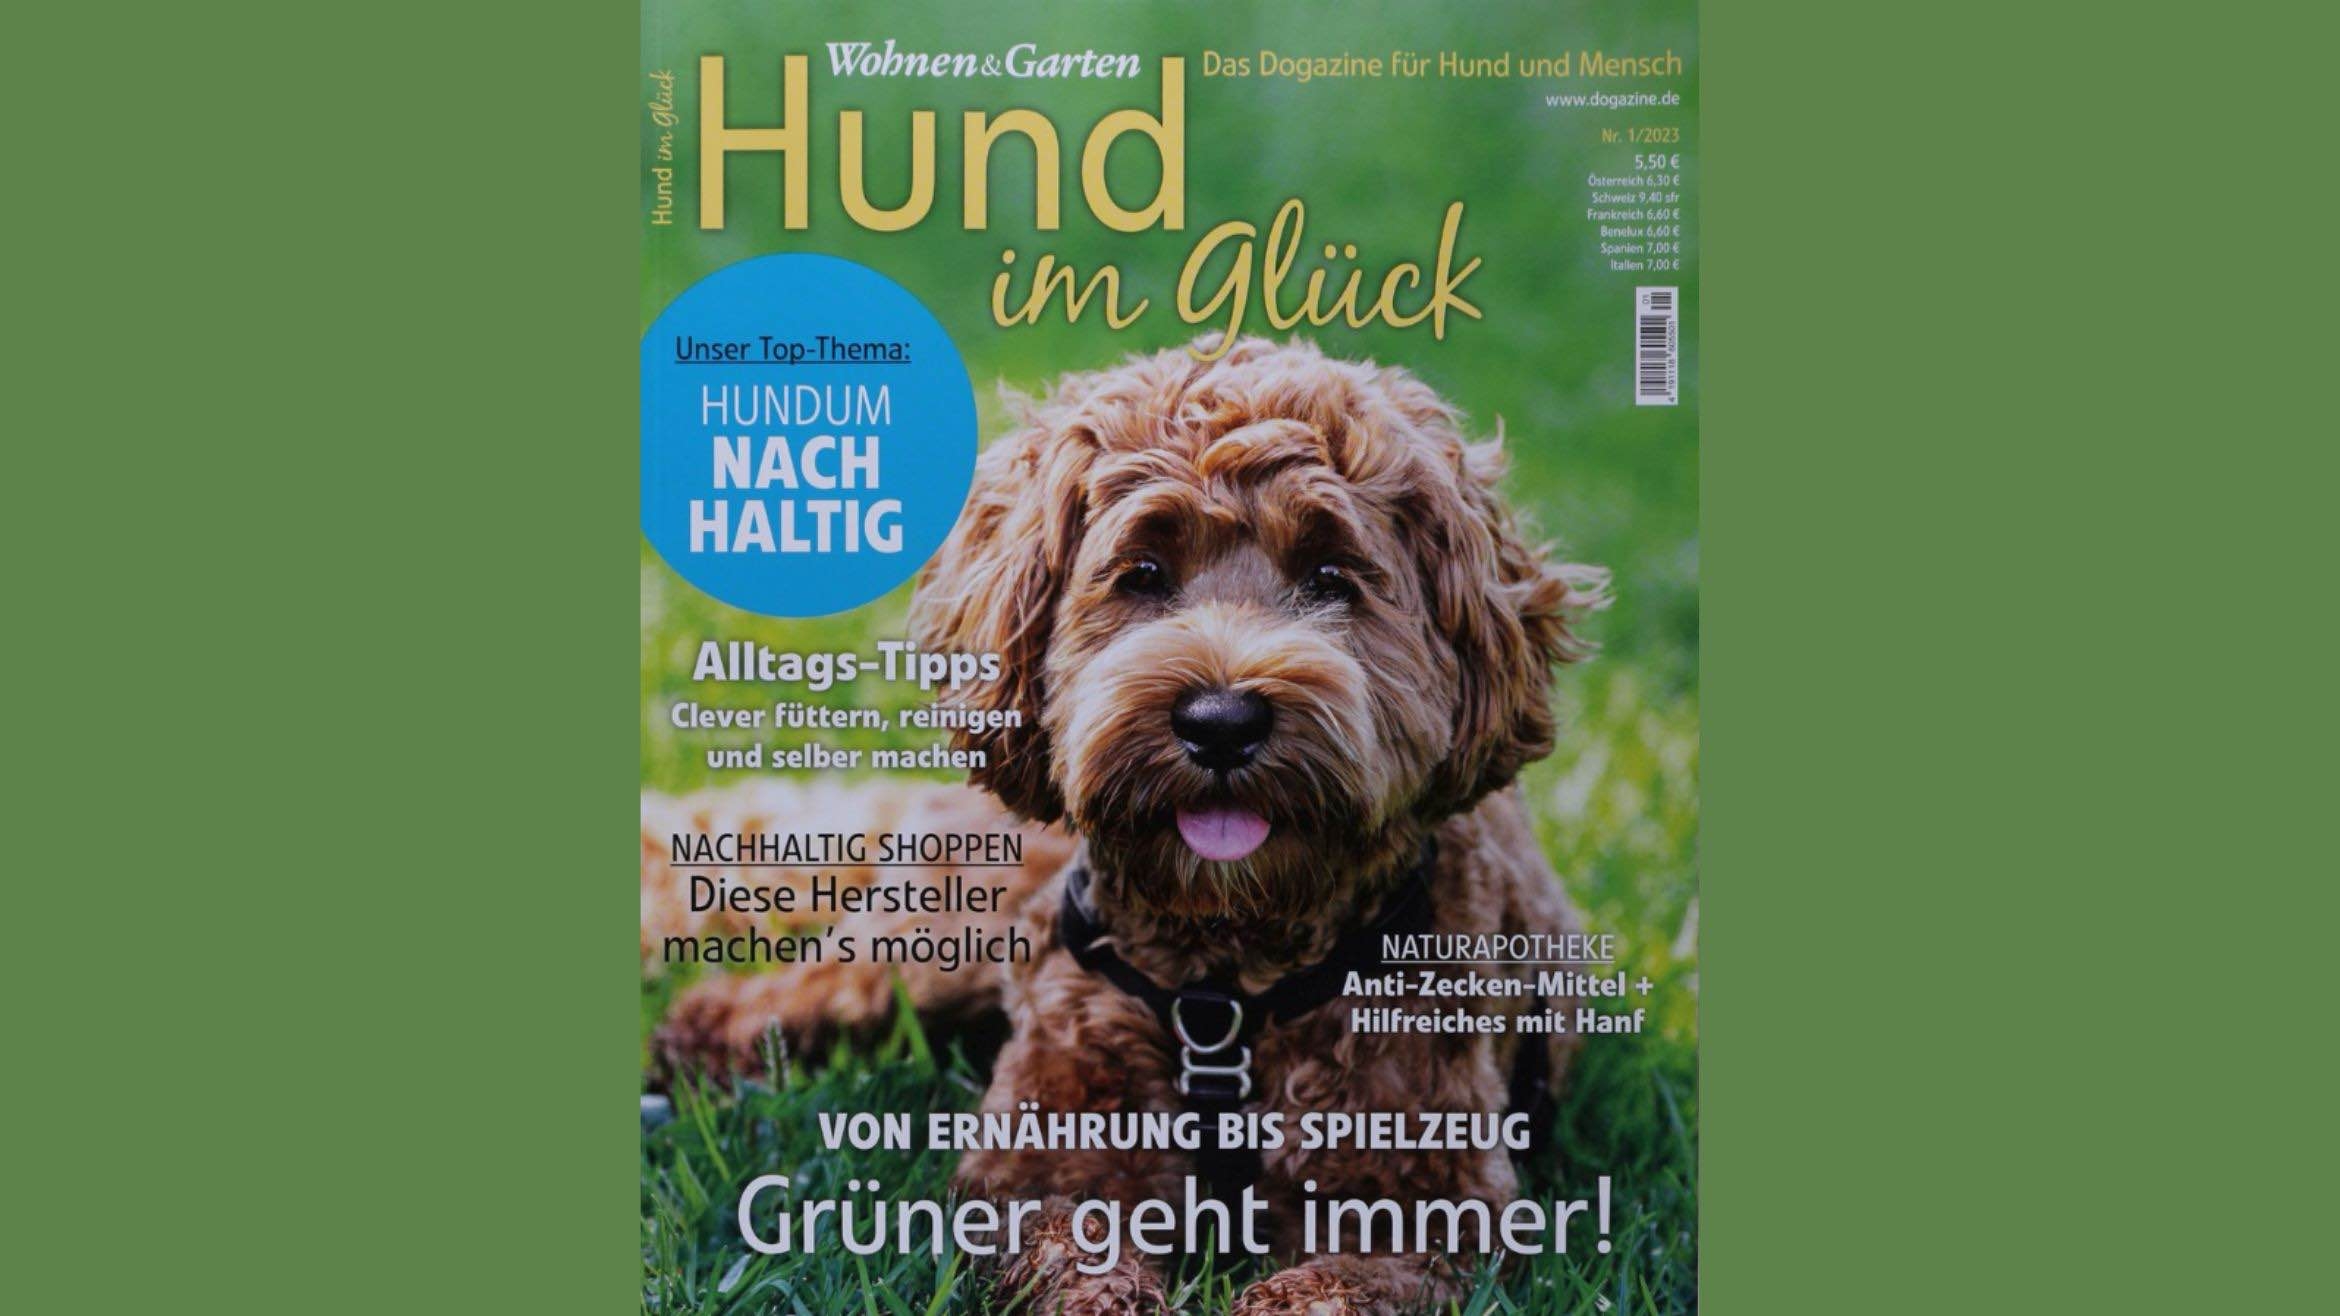 Sparkurs in Offenburg: Burda Verlag stellt sieben Magazine ein